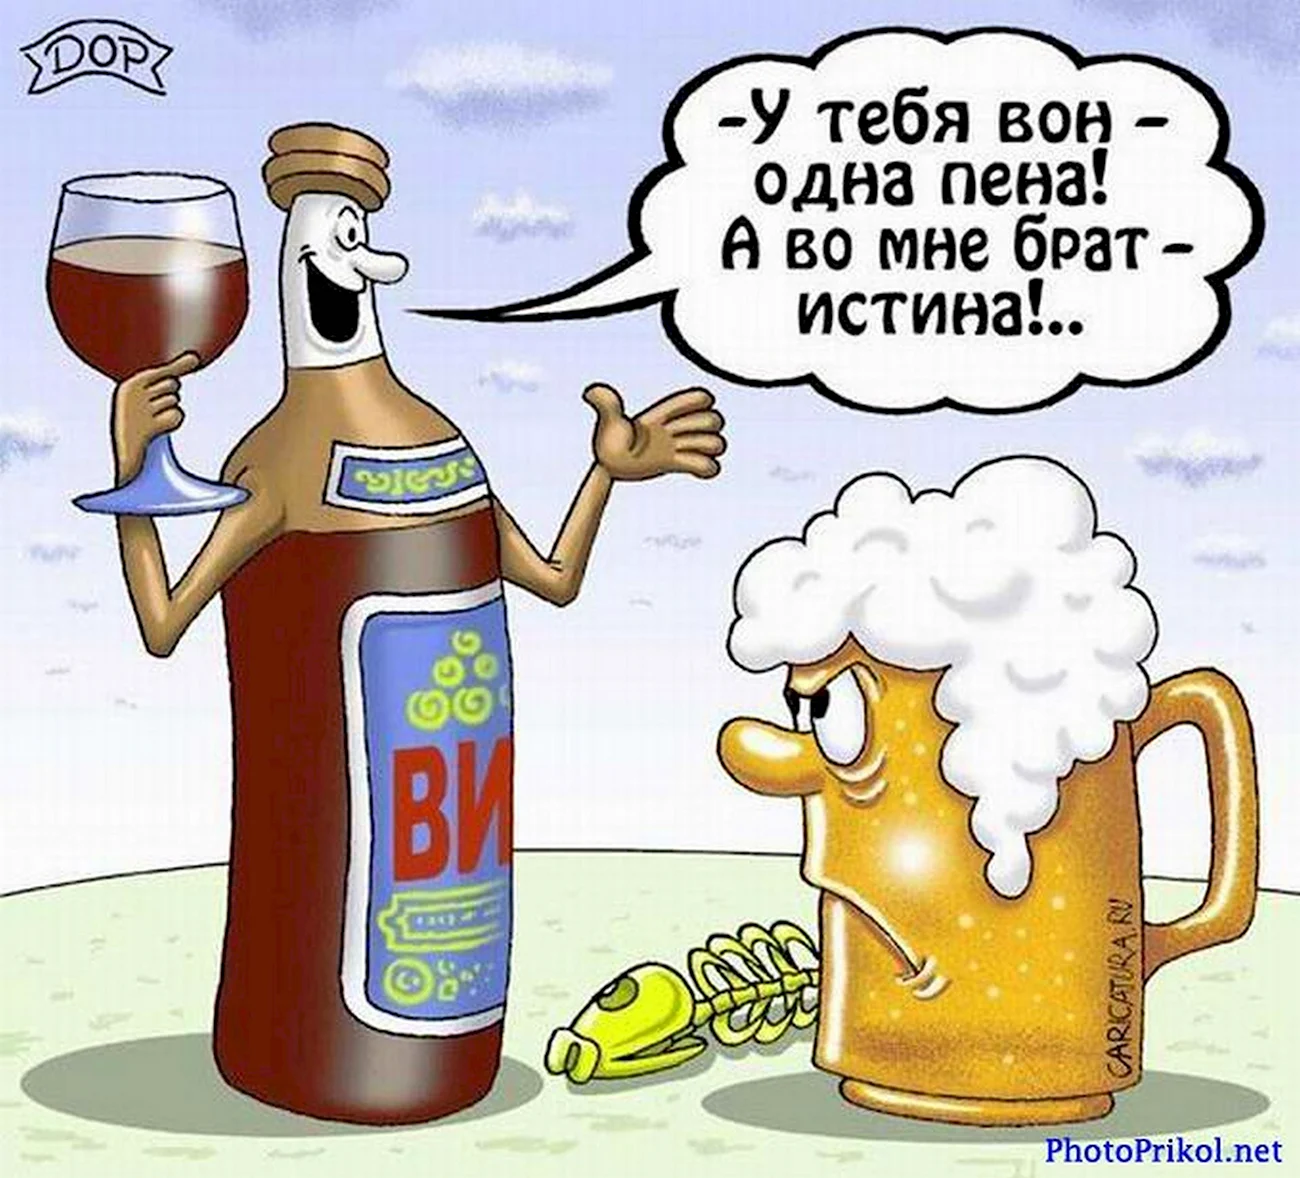 Смешные карикатуры про пиво. Прикольная картинка